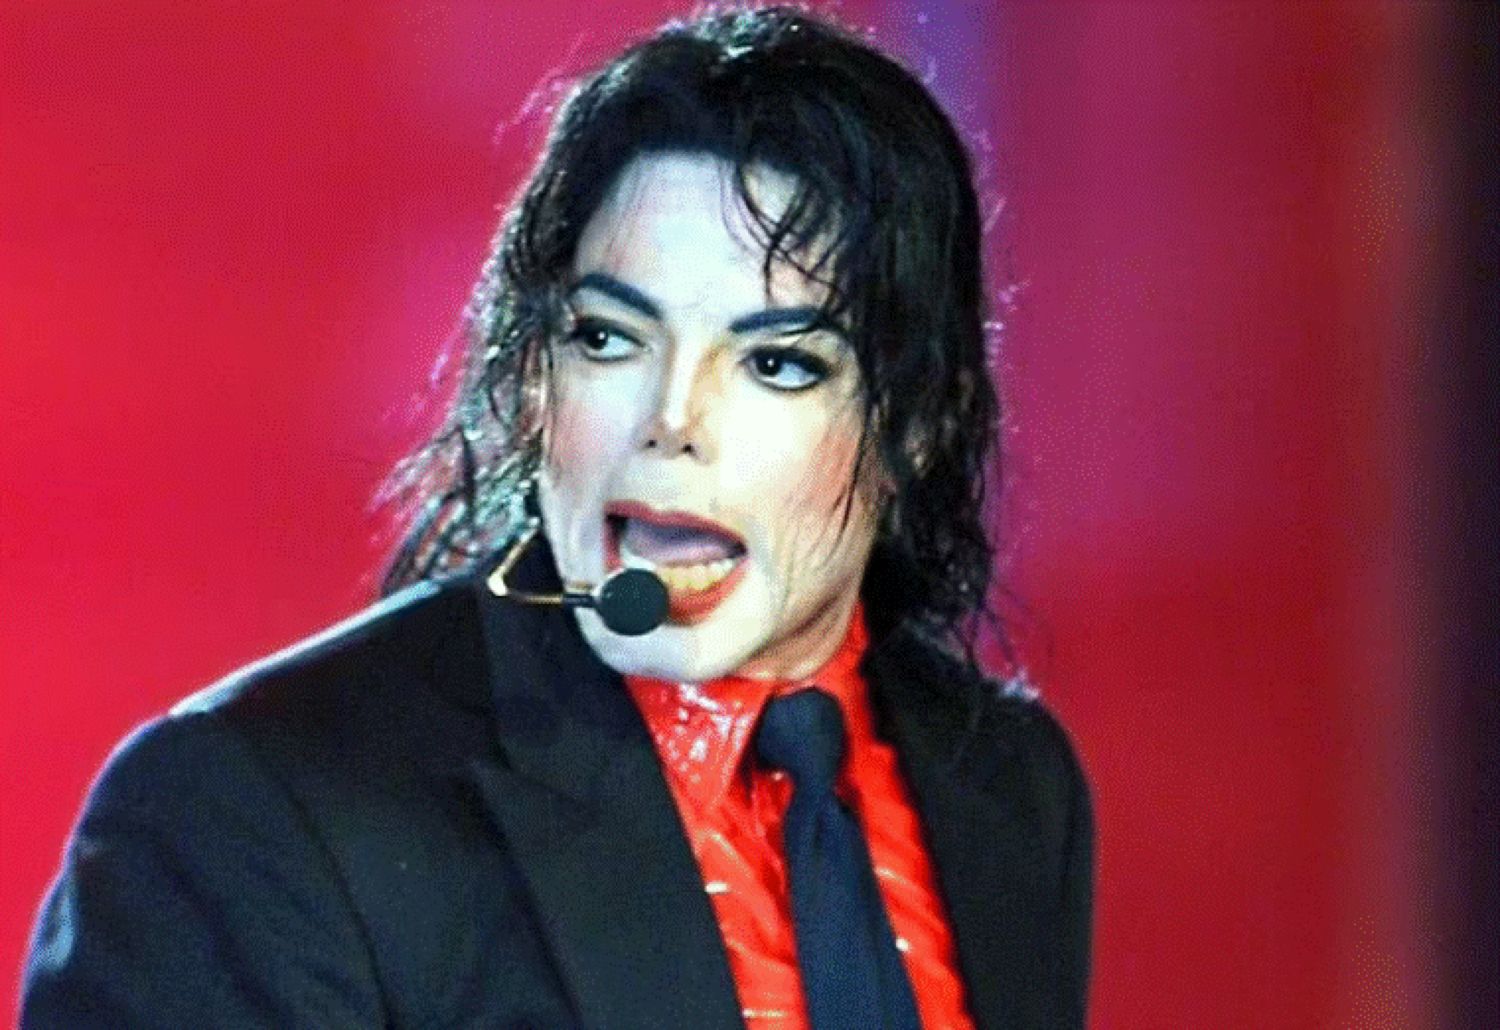 Fotografiile nud ale lui Michael Jackson ar putea fi împărtășite lumii întregi. S-a deschis un nou proces